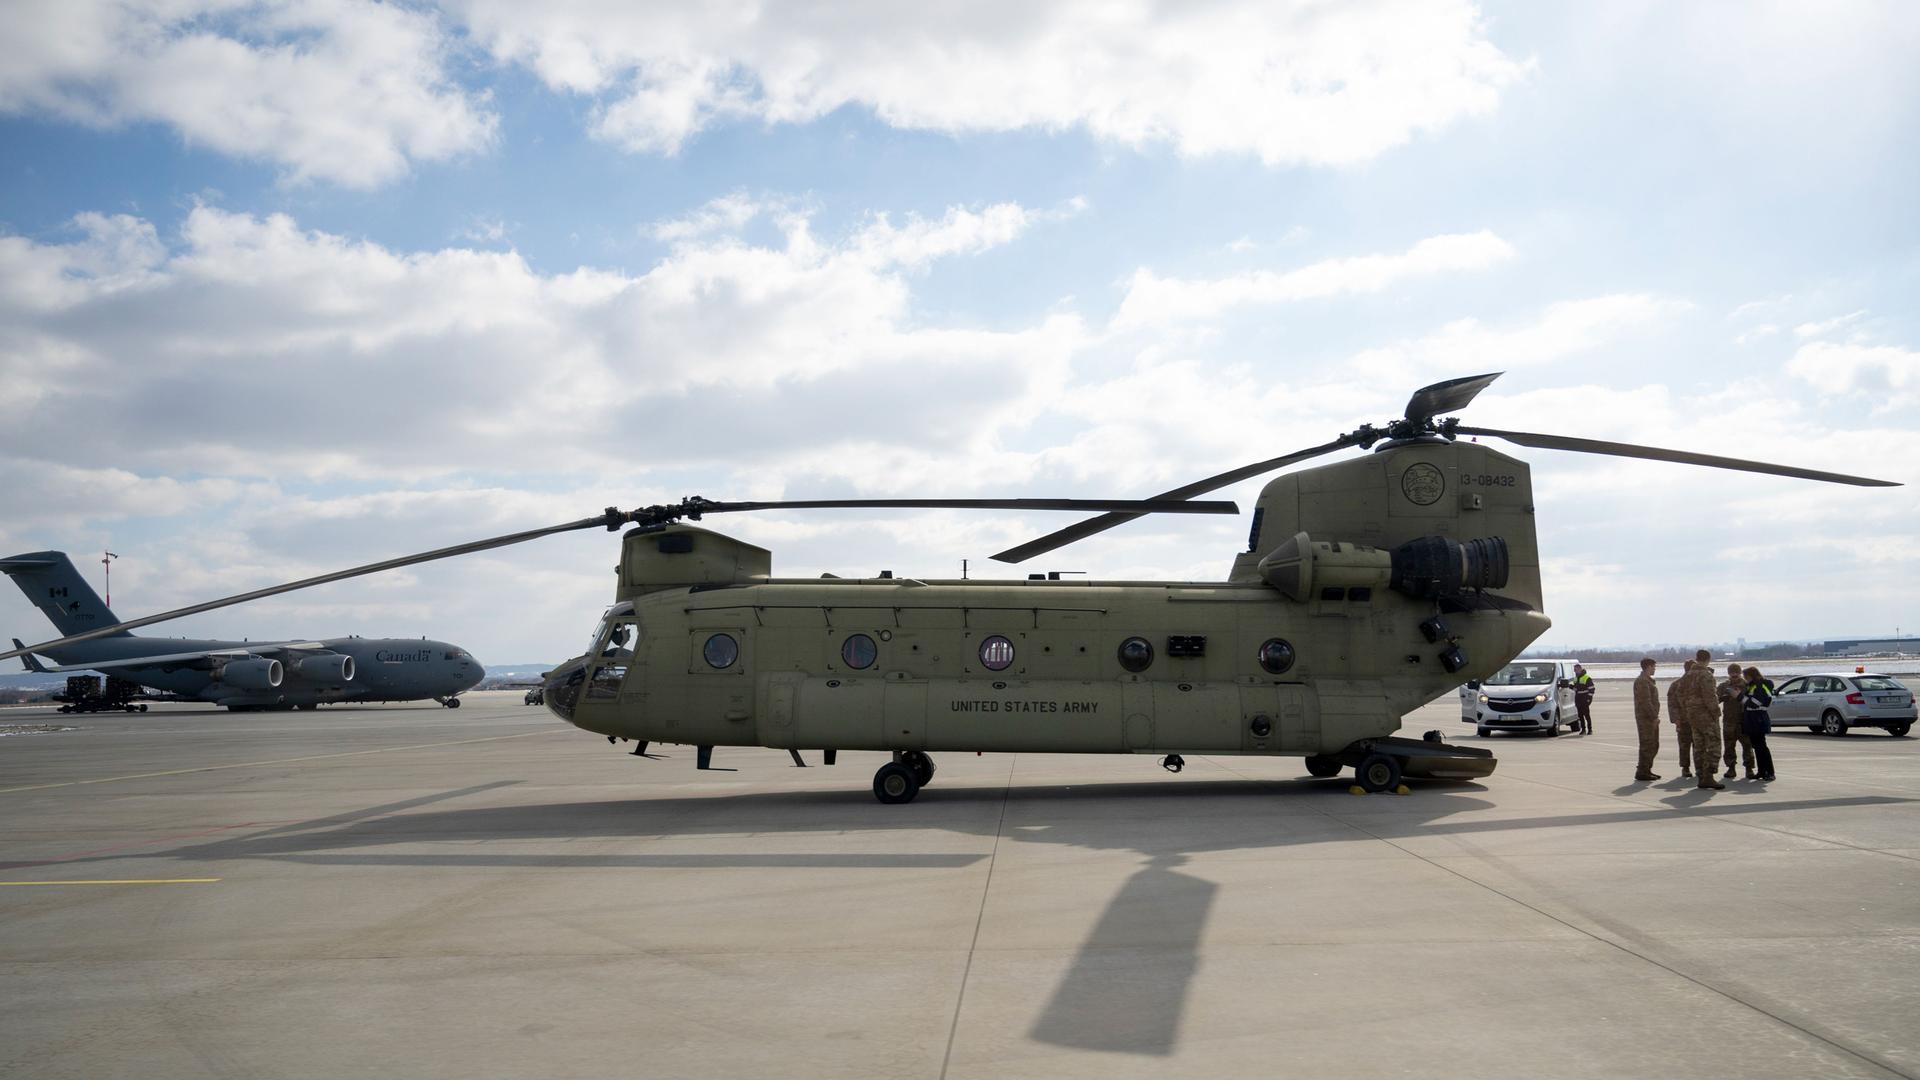 Am Flughafen Rzeszow in Polen steht ein Boeing CH-47 Chinook Helikopter der US-Armee.